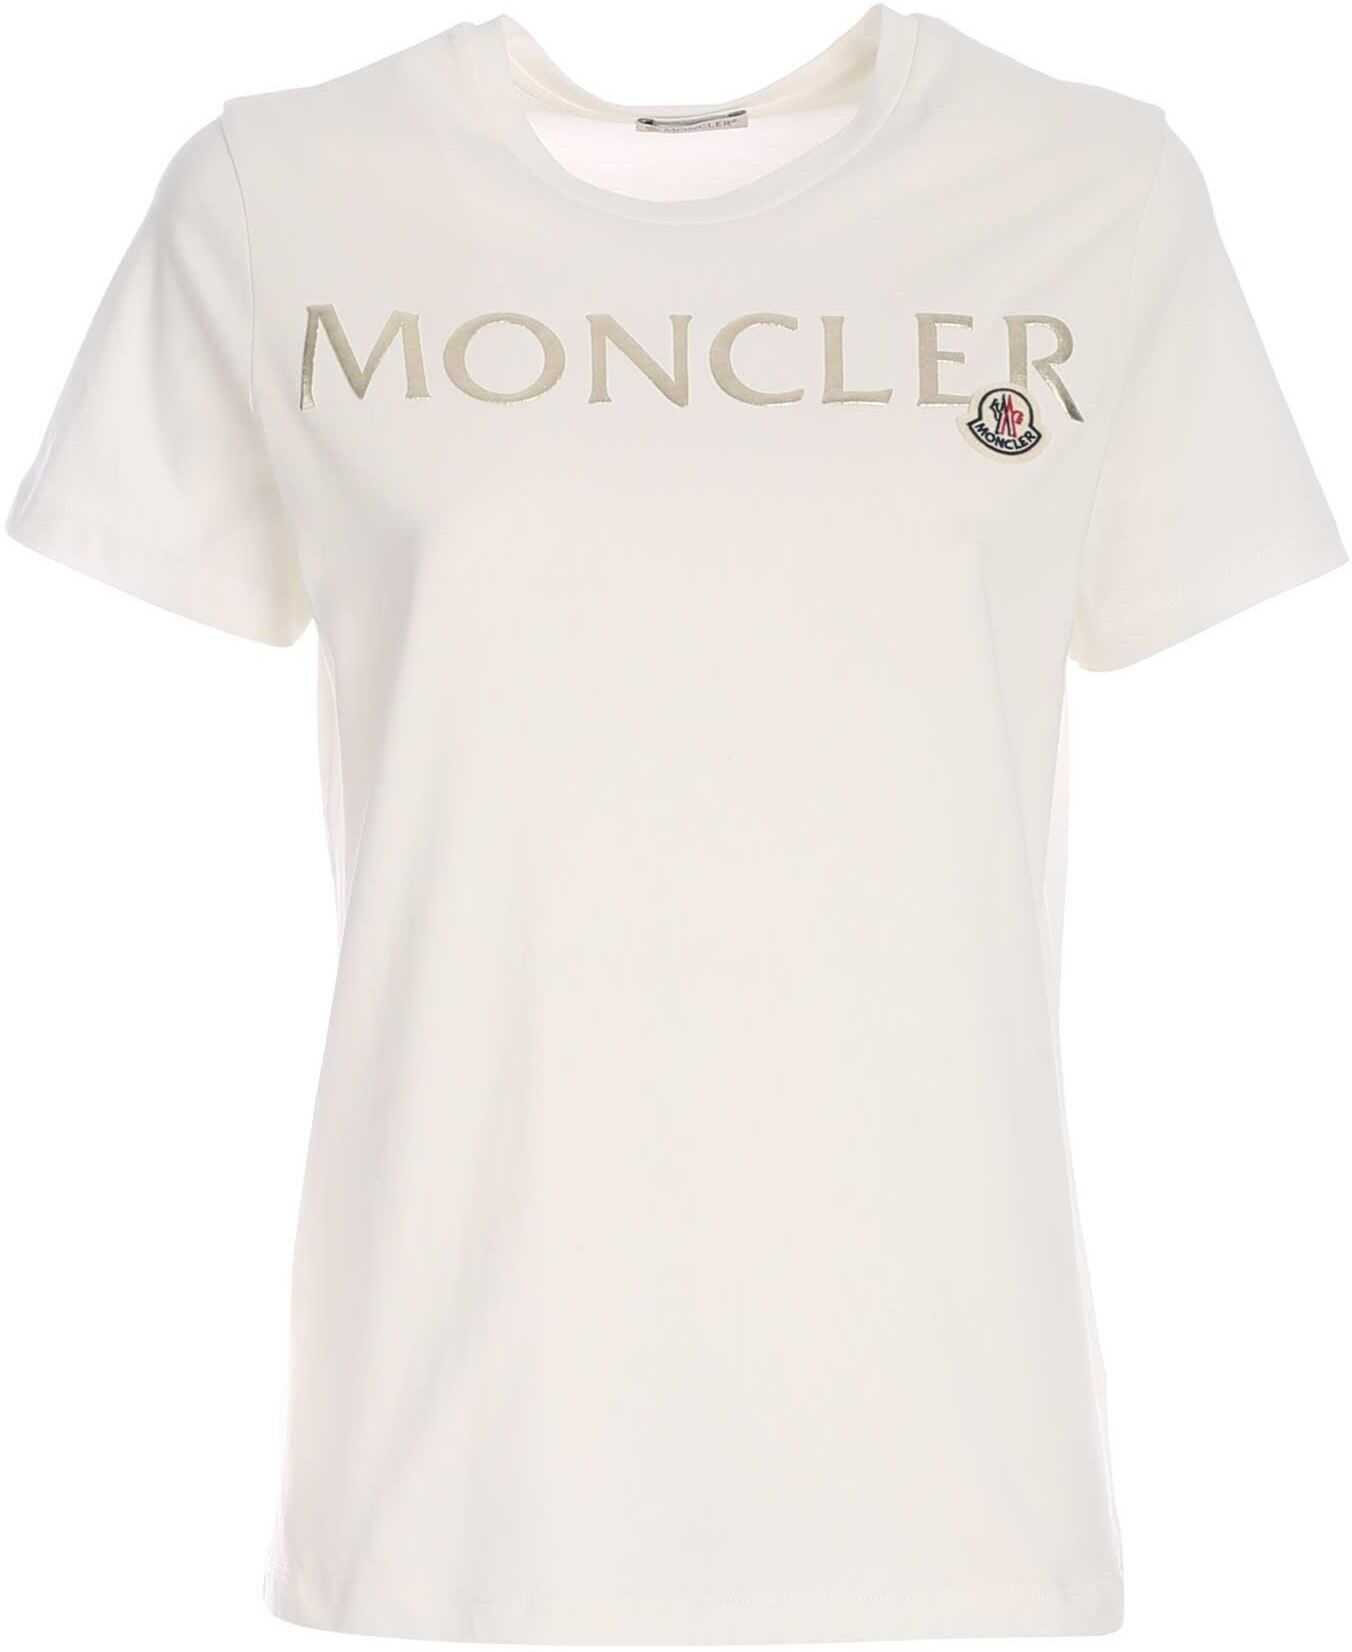 Moncler Moncler Print T-Shirt In White 8C71510 V8094 033 White